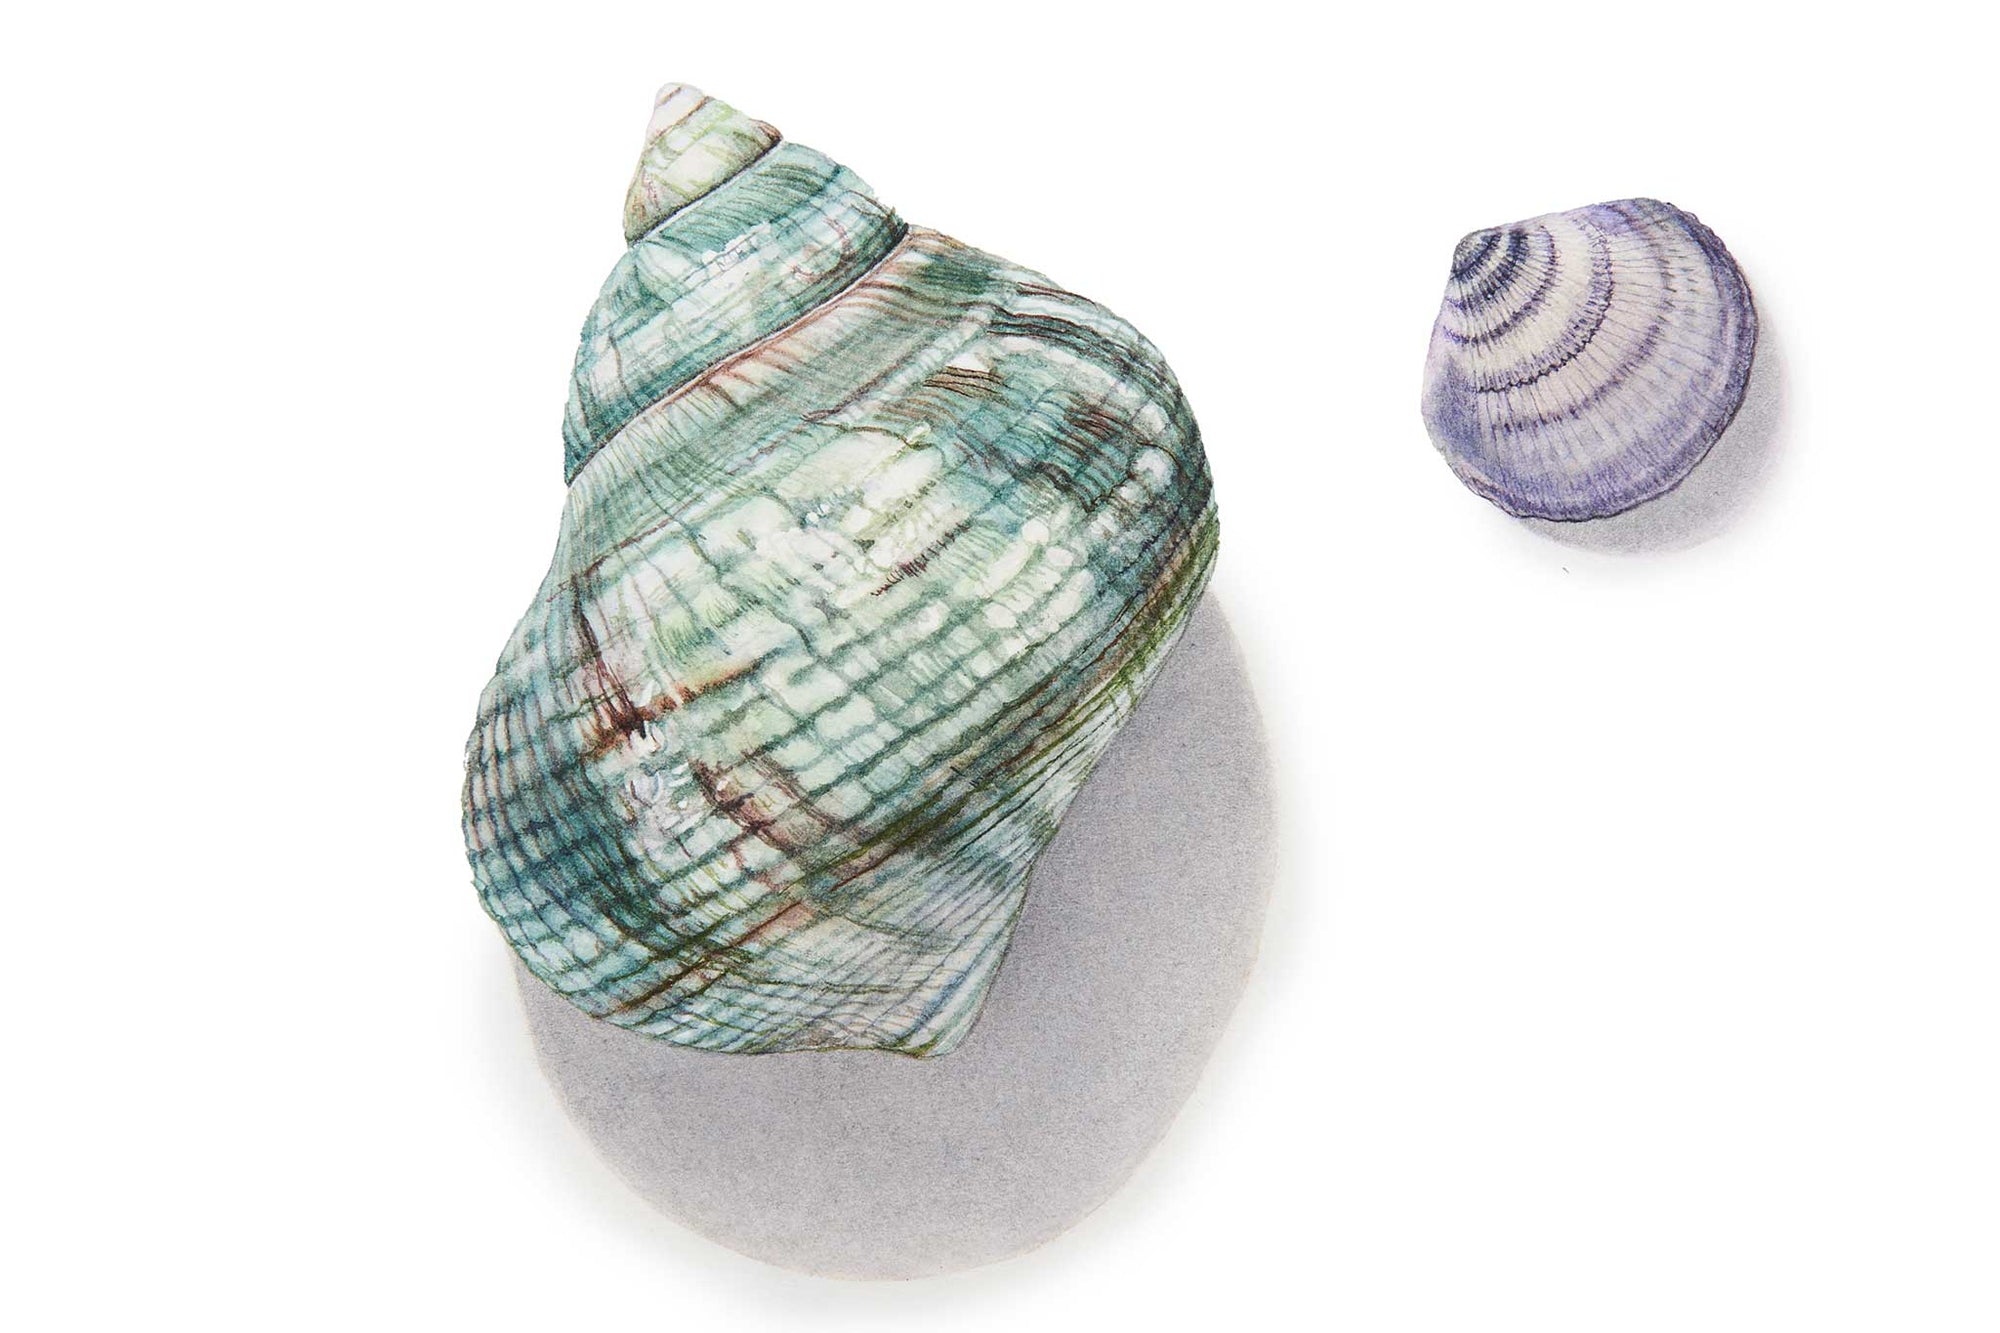 Green Sea Snail Shell & Extra Small Shell